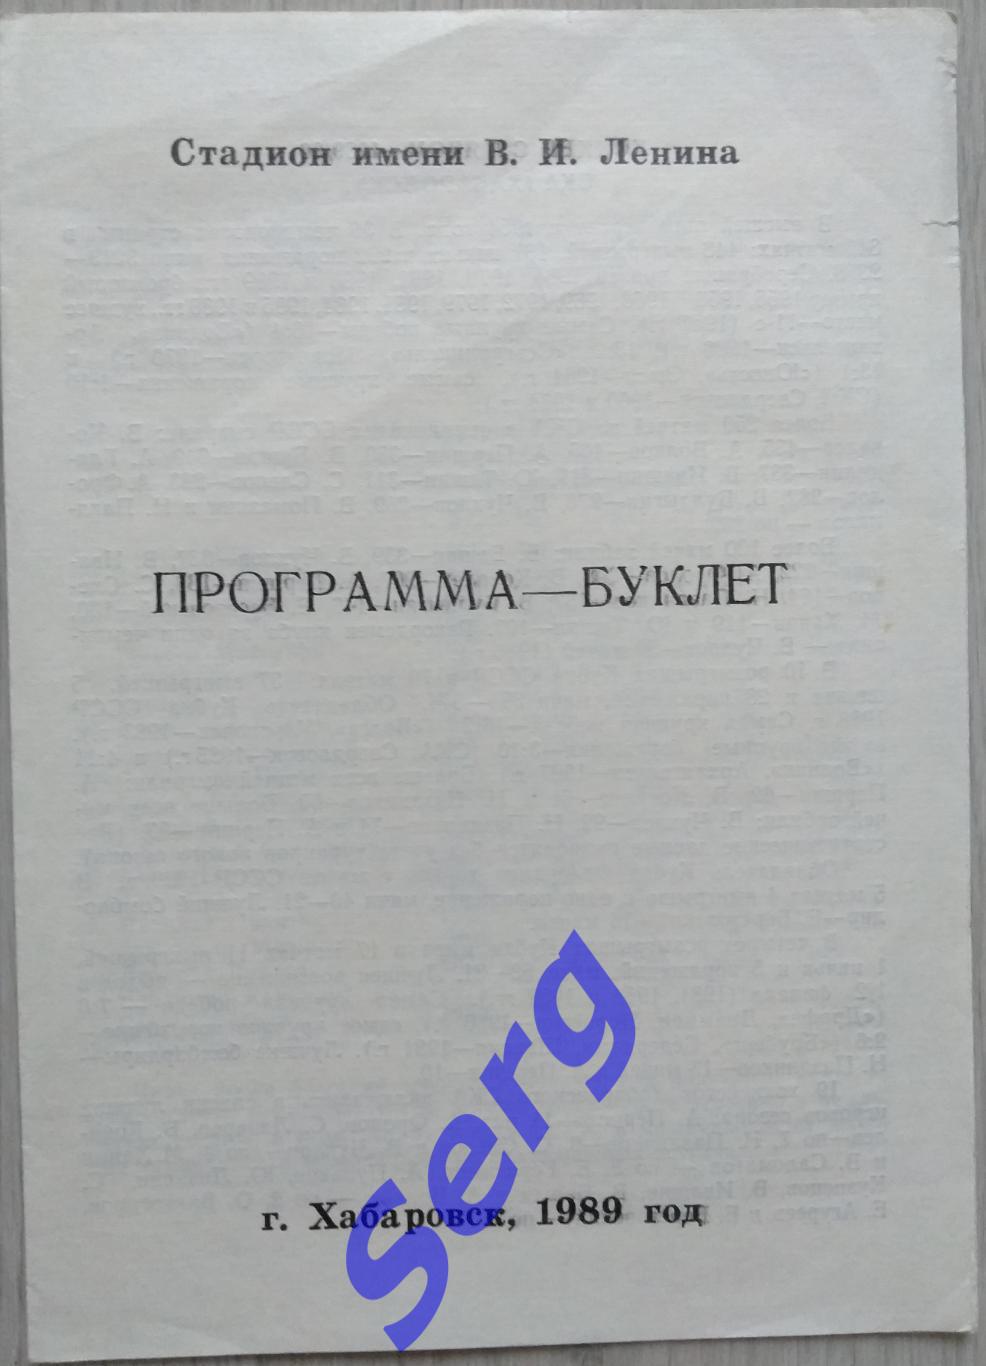 СКА Хабаровск. Хоккей с мячом - 1989-90 г.г. Программа-буклет